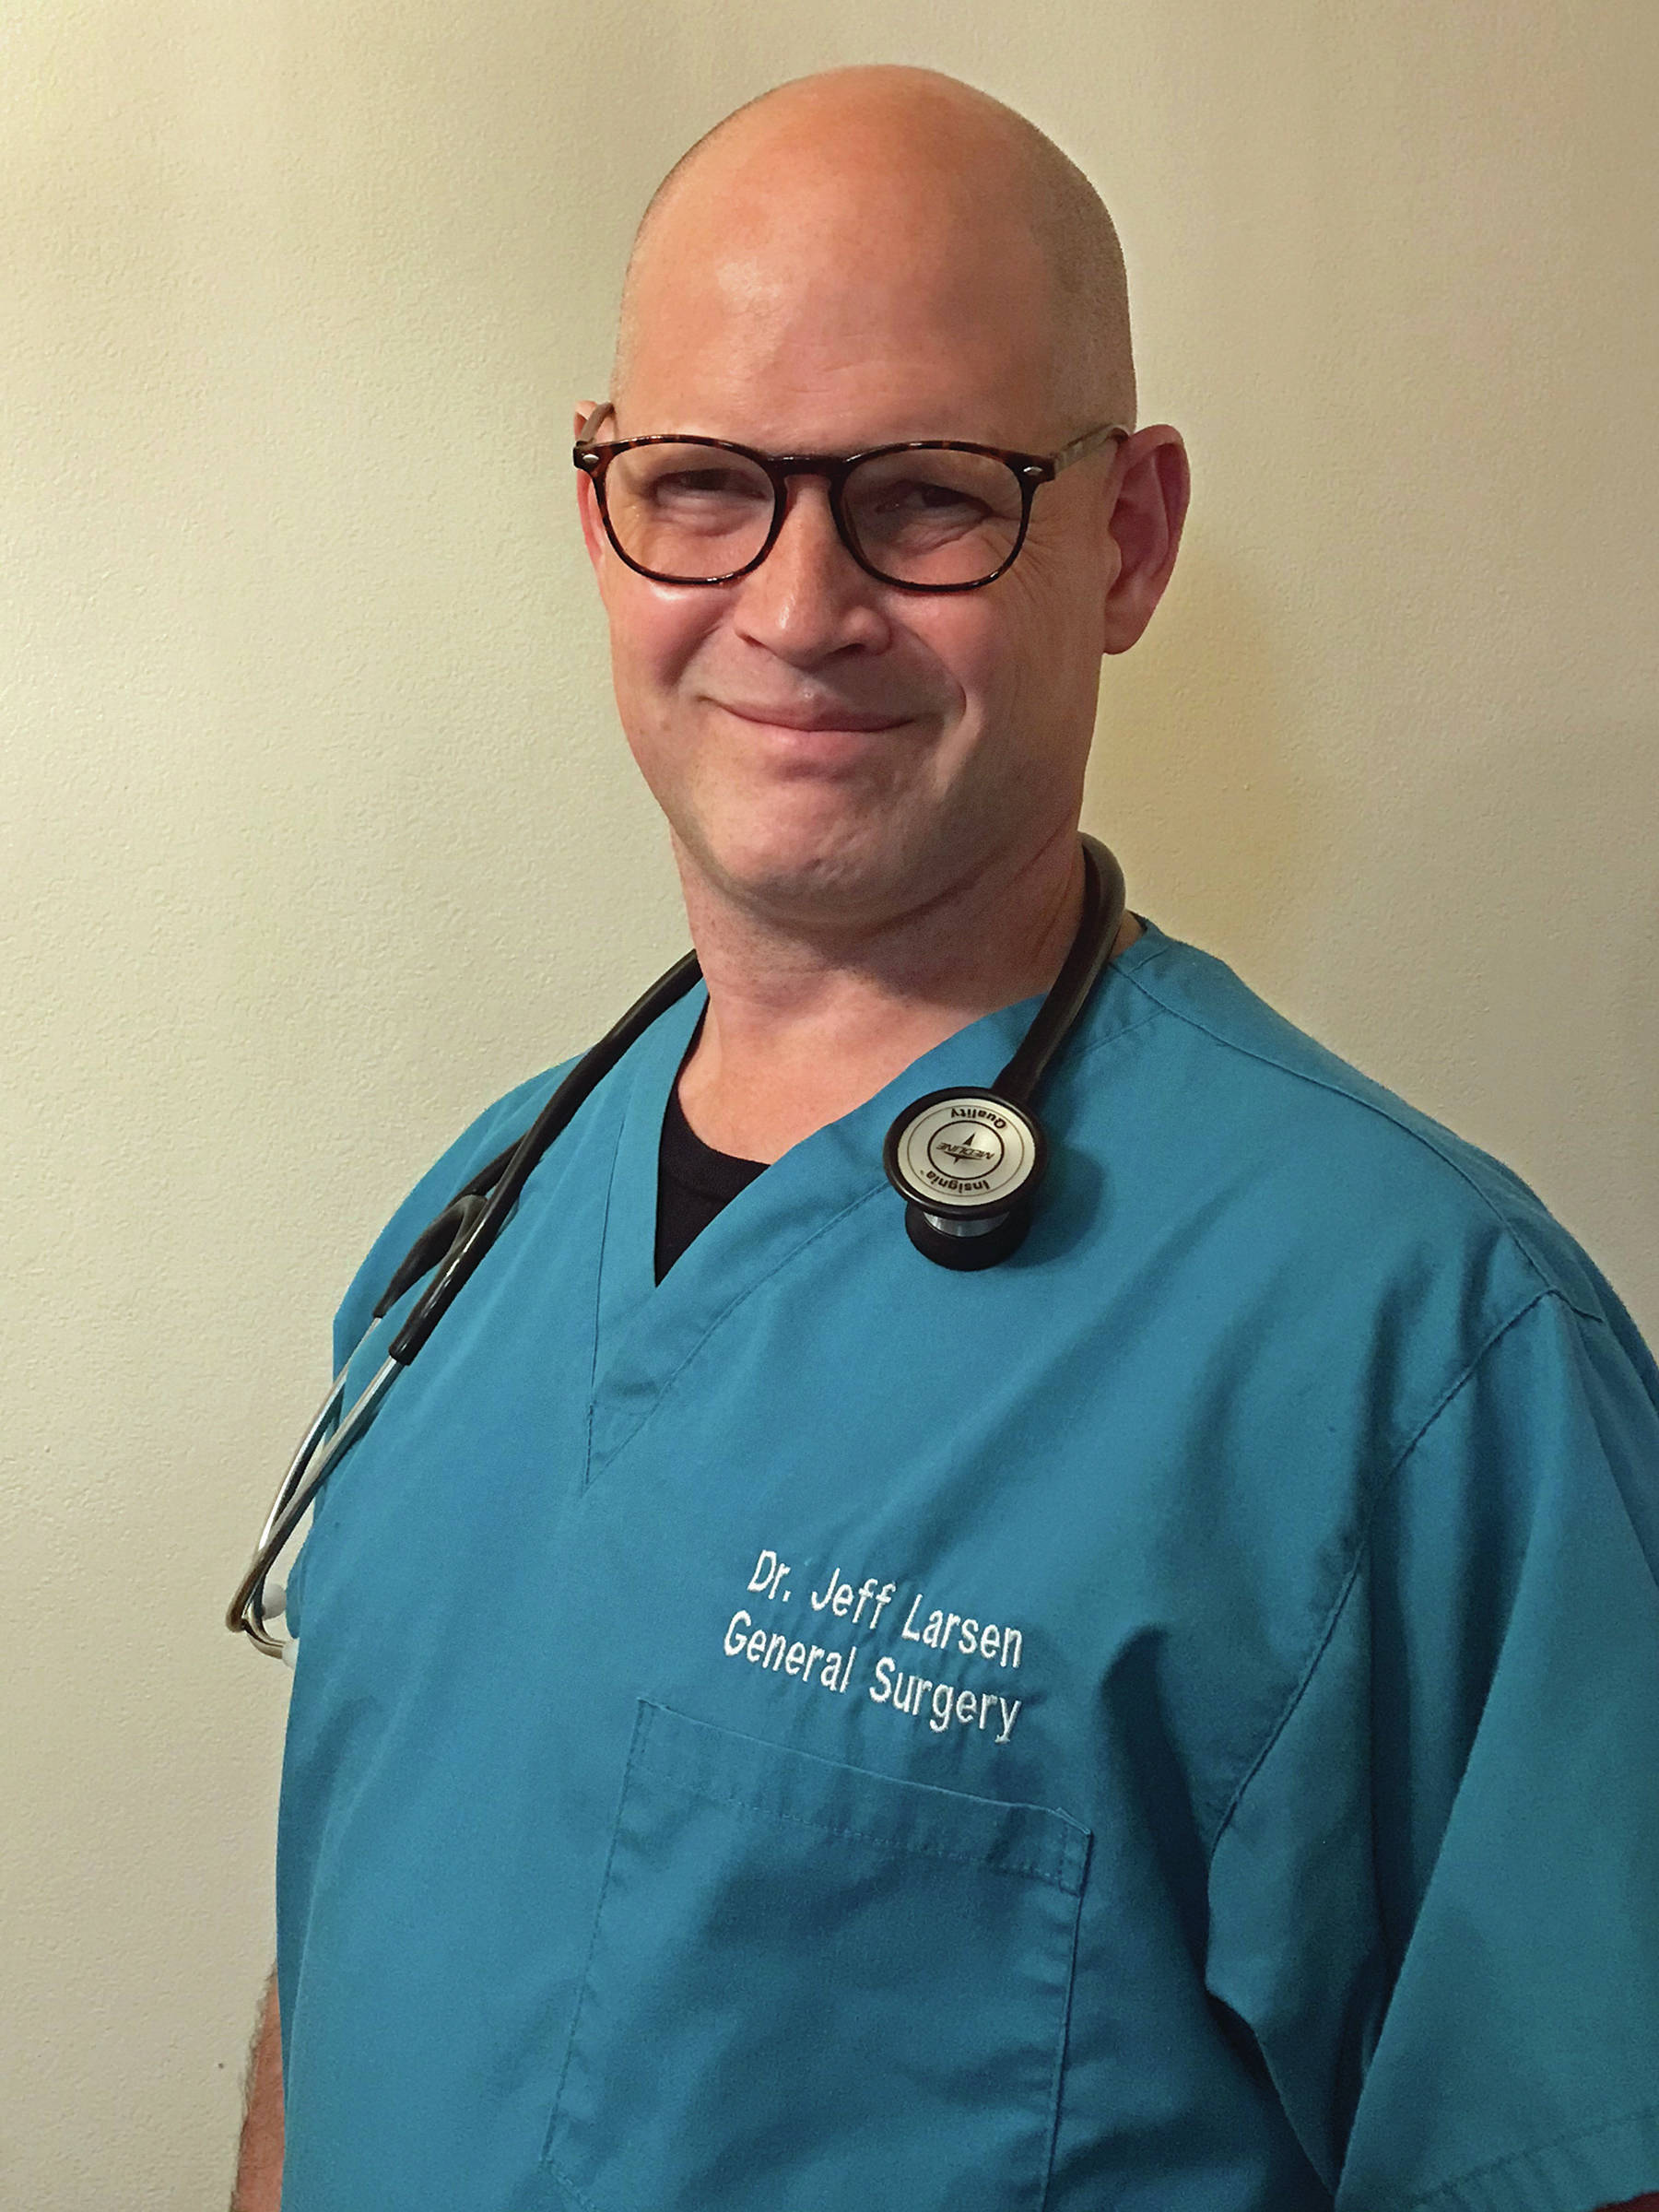 Dr. Jeff Larsen, general surgeon, in a photo taken Nov. 8, 2019, at South Peninsula Hospital, Homer, Alaska. (Photo courtesy of South Peninsula Hospital)